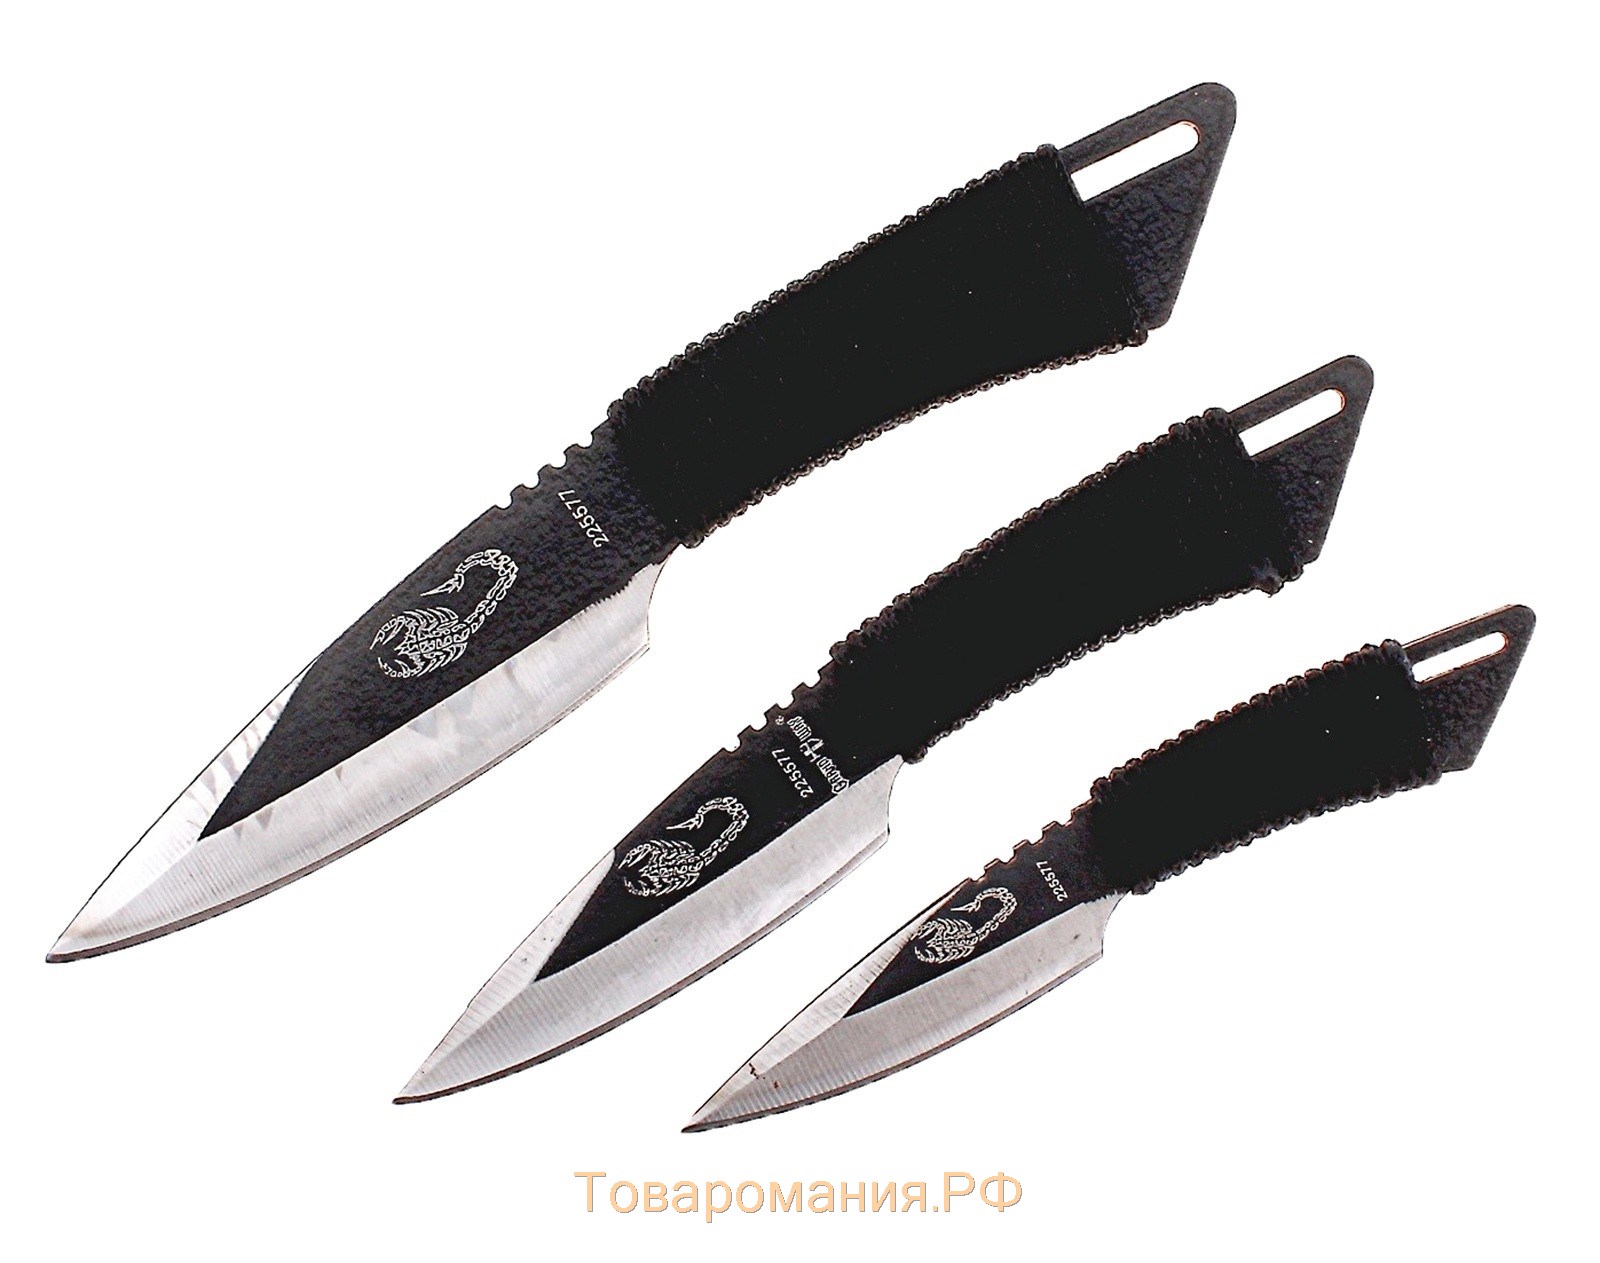 Набор метательных ножей "Скорпион", в оплётке, 3 шт., чёрные